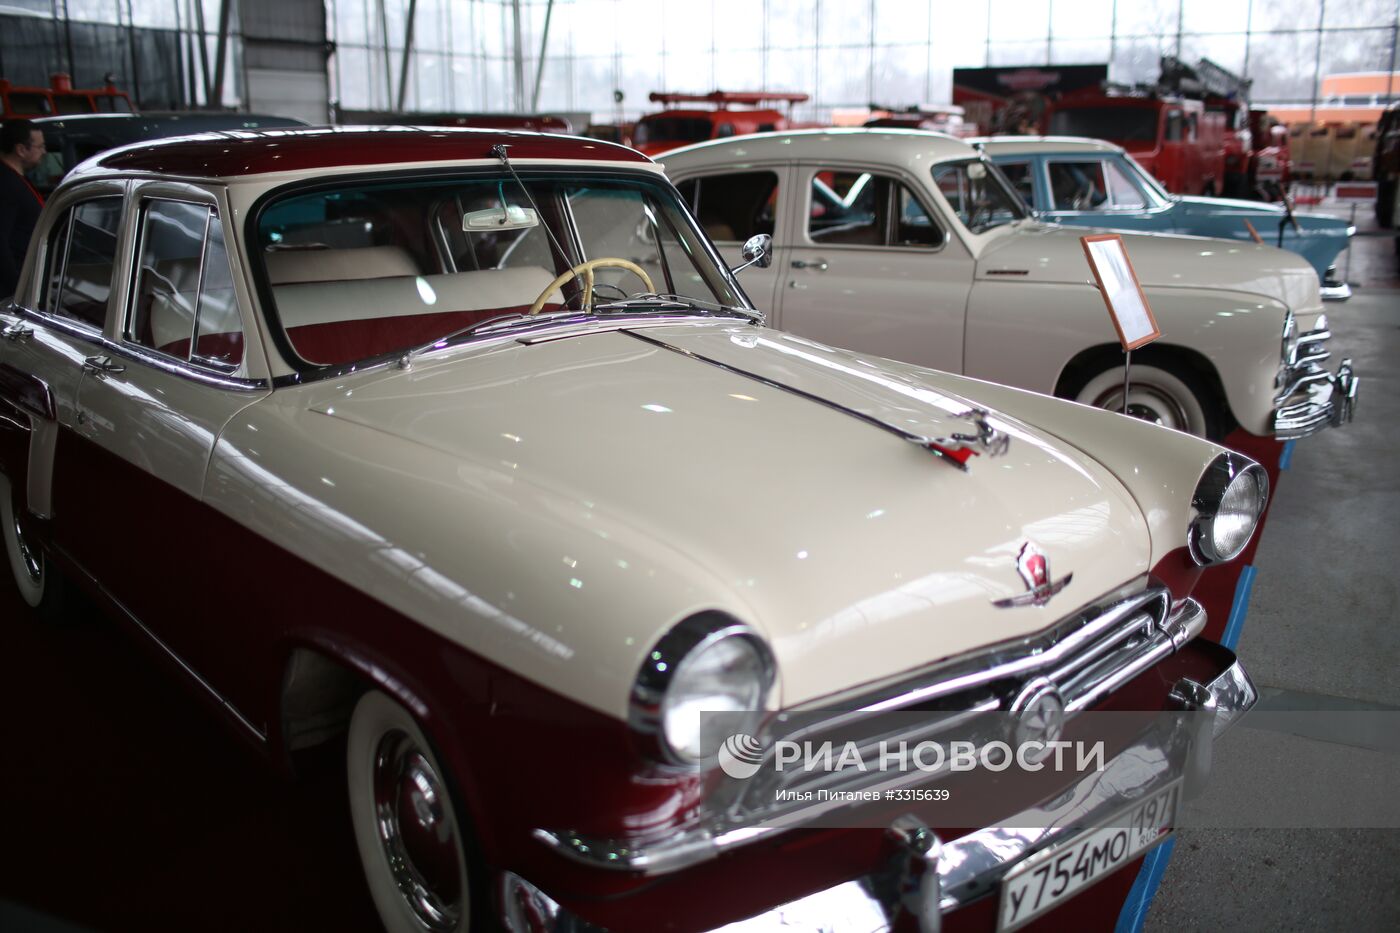 27-я выставка старинных автомобилей "Олдтаймер-Галерея"